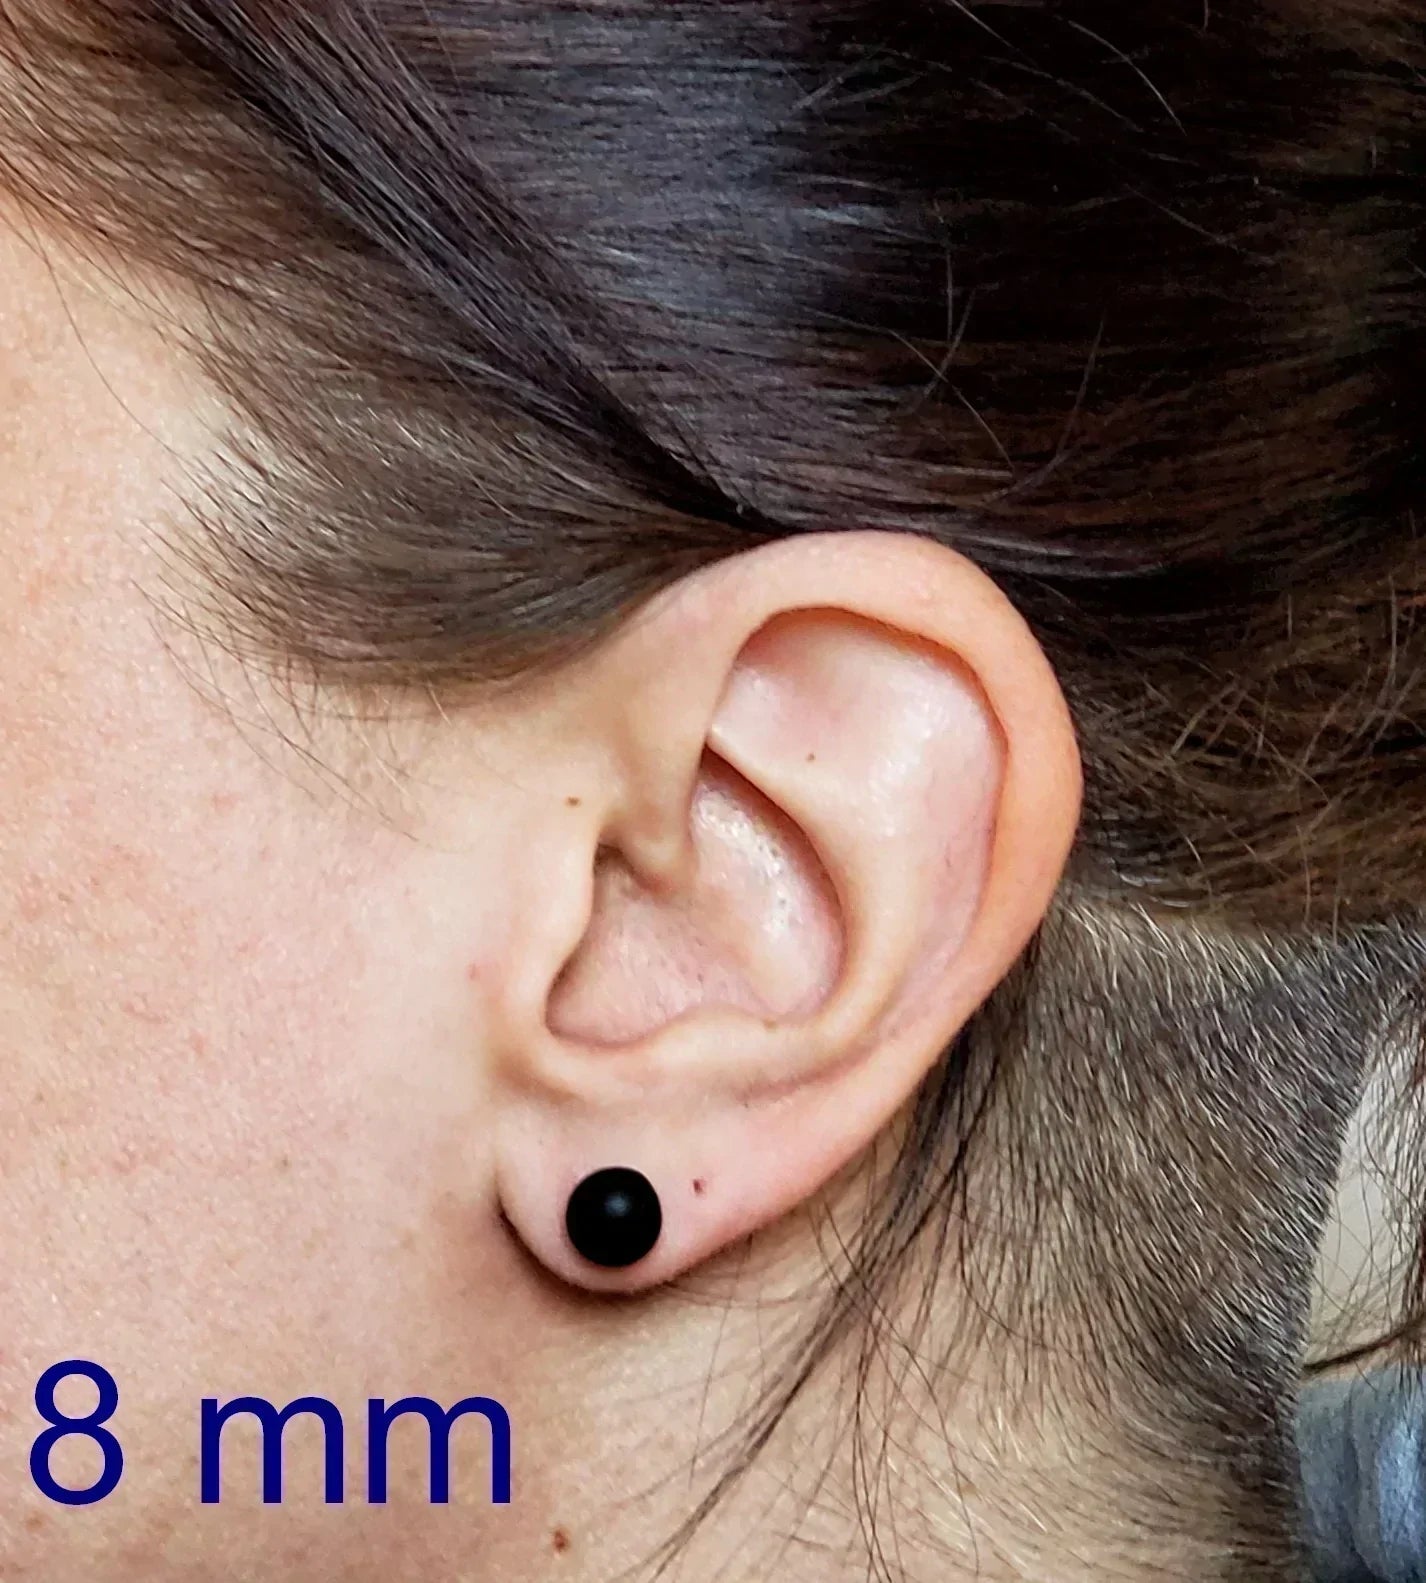 +/- 12 mm, Boucles d'oreilles dépareillées, verre fusion #78 - Bijoux Le fil d'Ariane